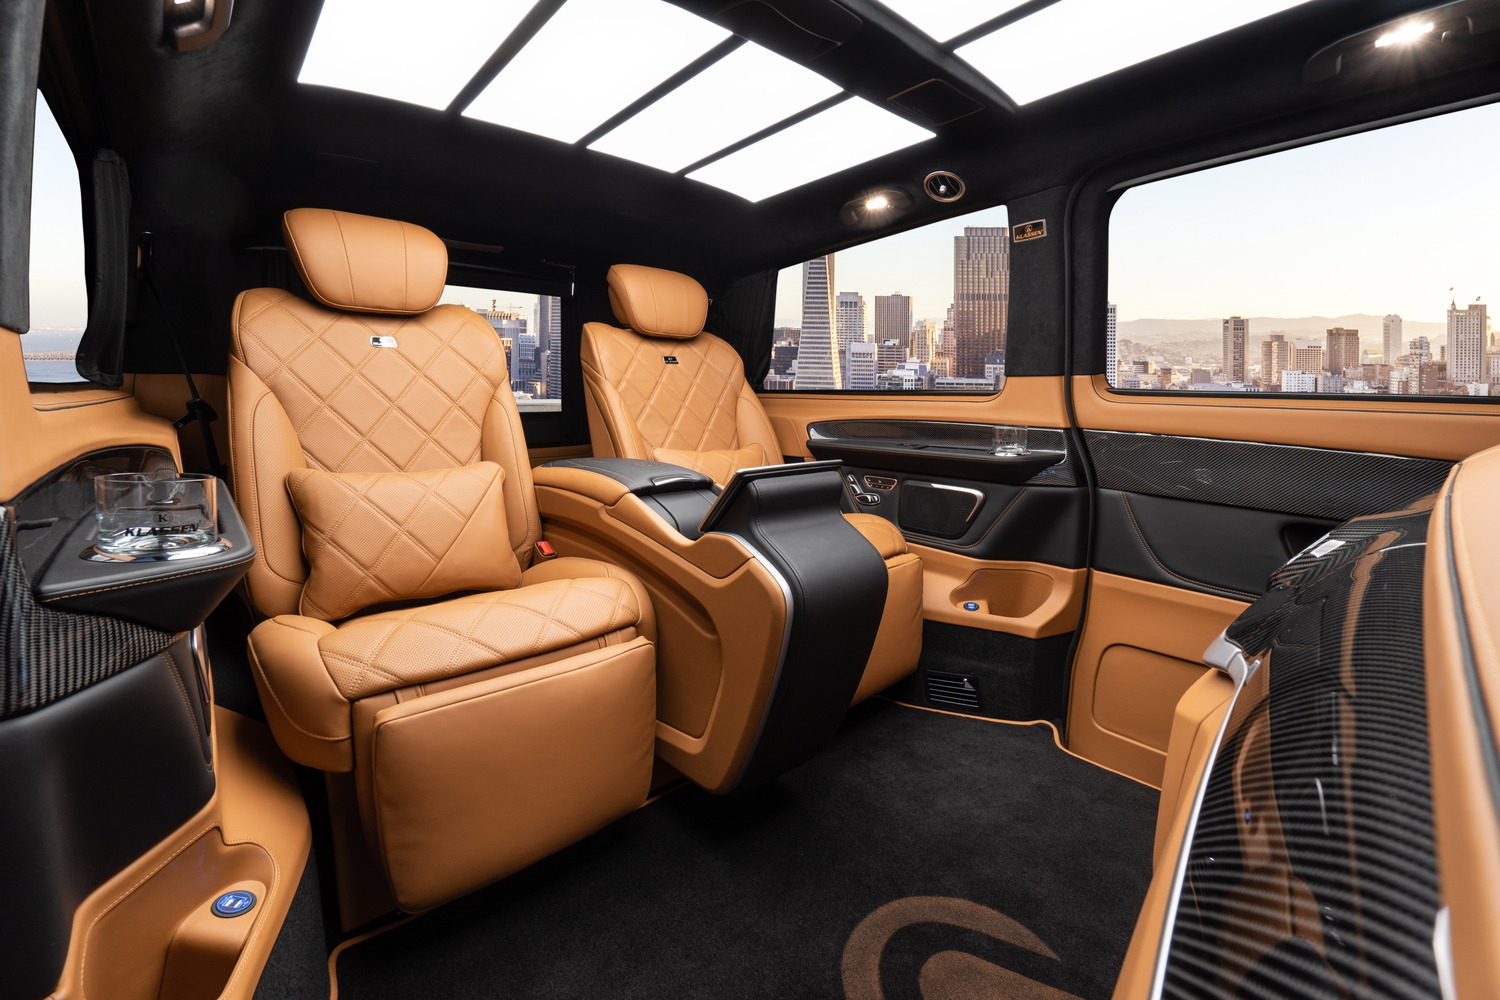 Die Mercedes-Benz V-Klasse vereint eine breite Auswahl edelster Materialien mit feinen Oberflächen sowie diverse Sitzvarianten zur individuellen Konfiguration. Hinzu kommt die Inszenierung von innovativer Technik und hochauflösenden Bildschirmen als Bedien- und Anzeigekonzept sowie für Arbeit und Infotainment.